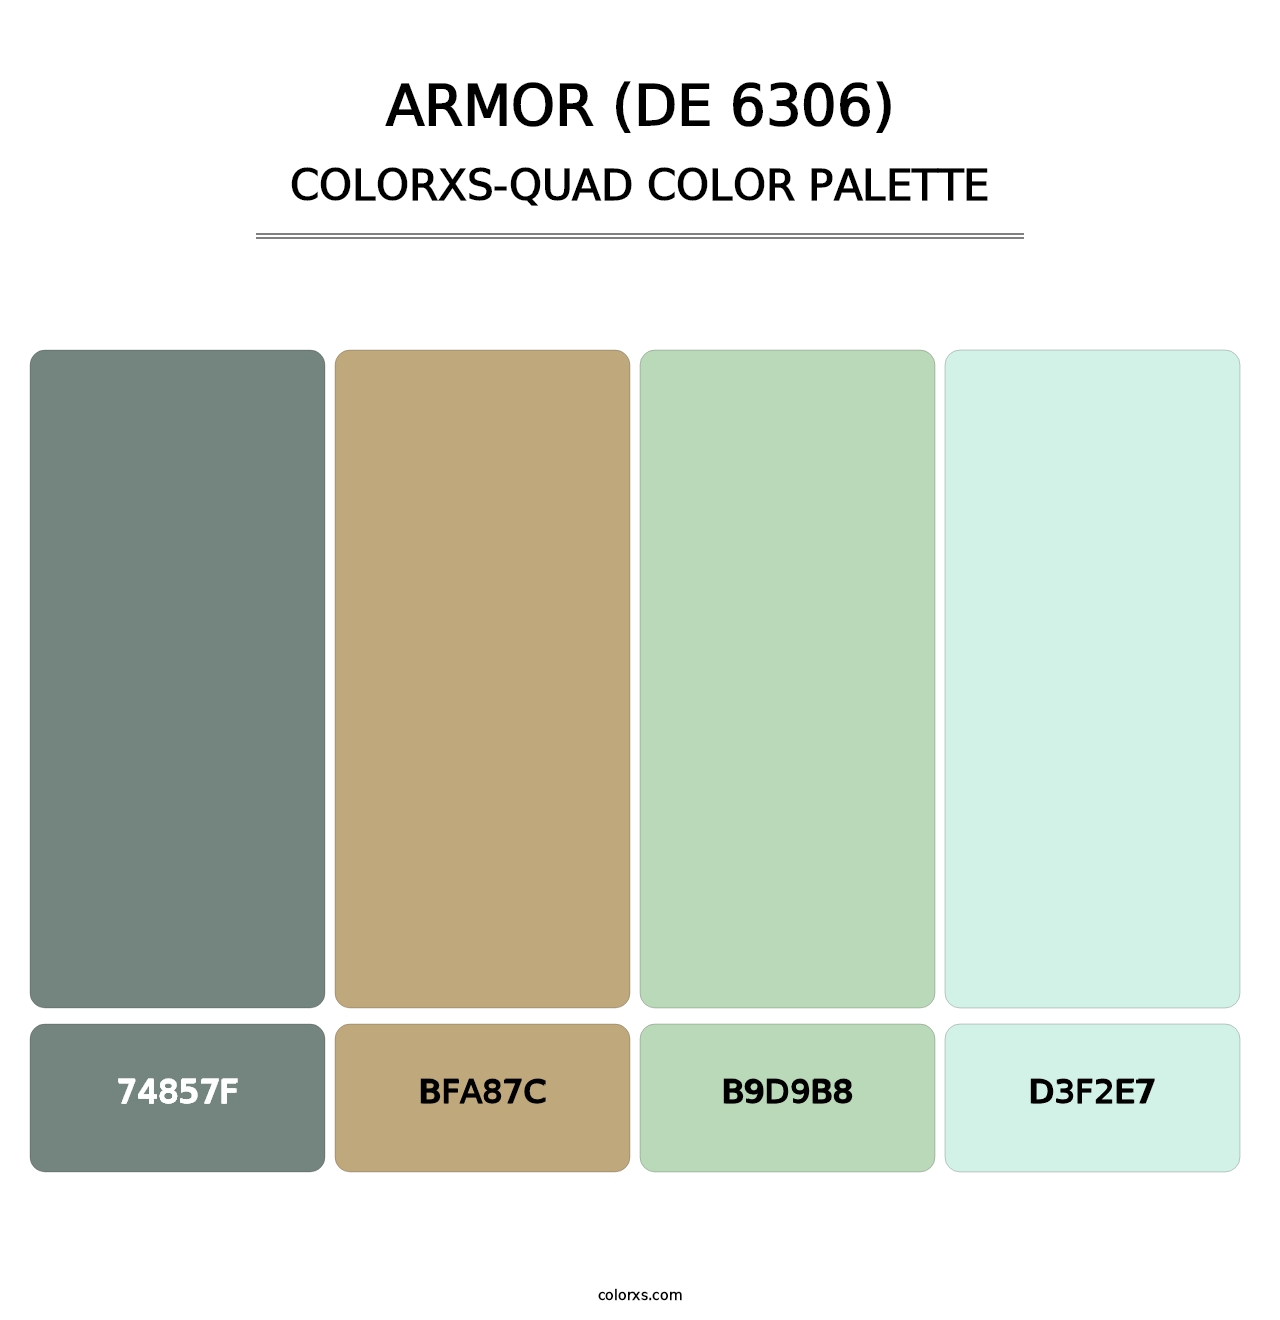 Armor (DE 6306) - Colorxs Quad Palette